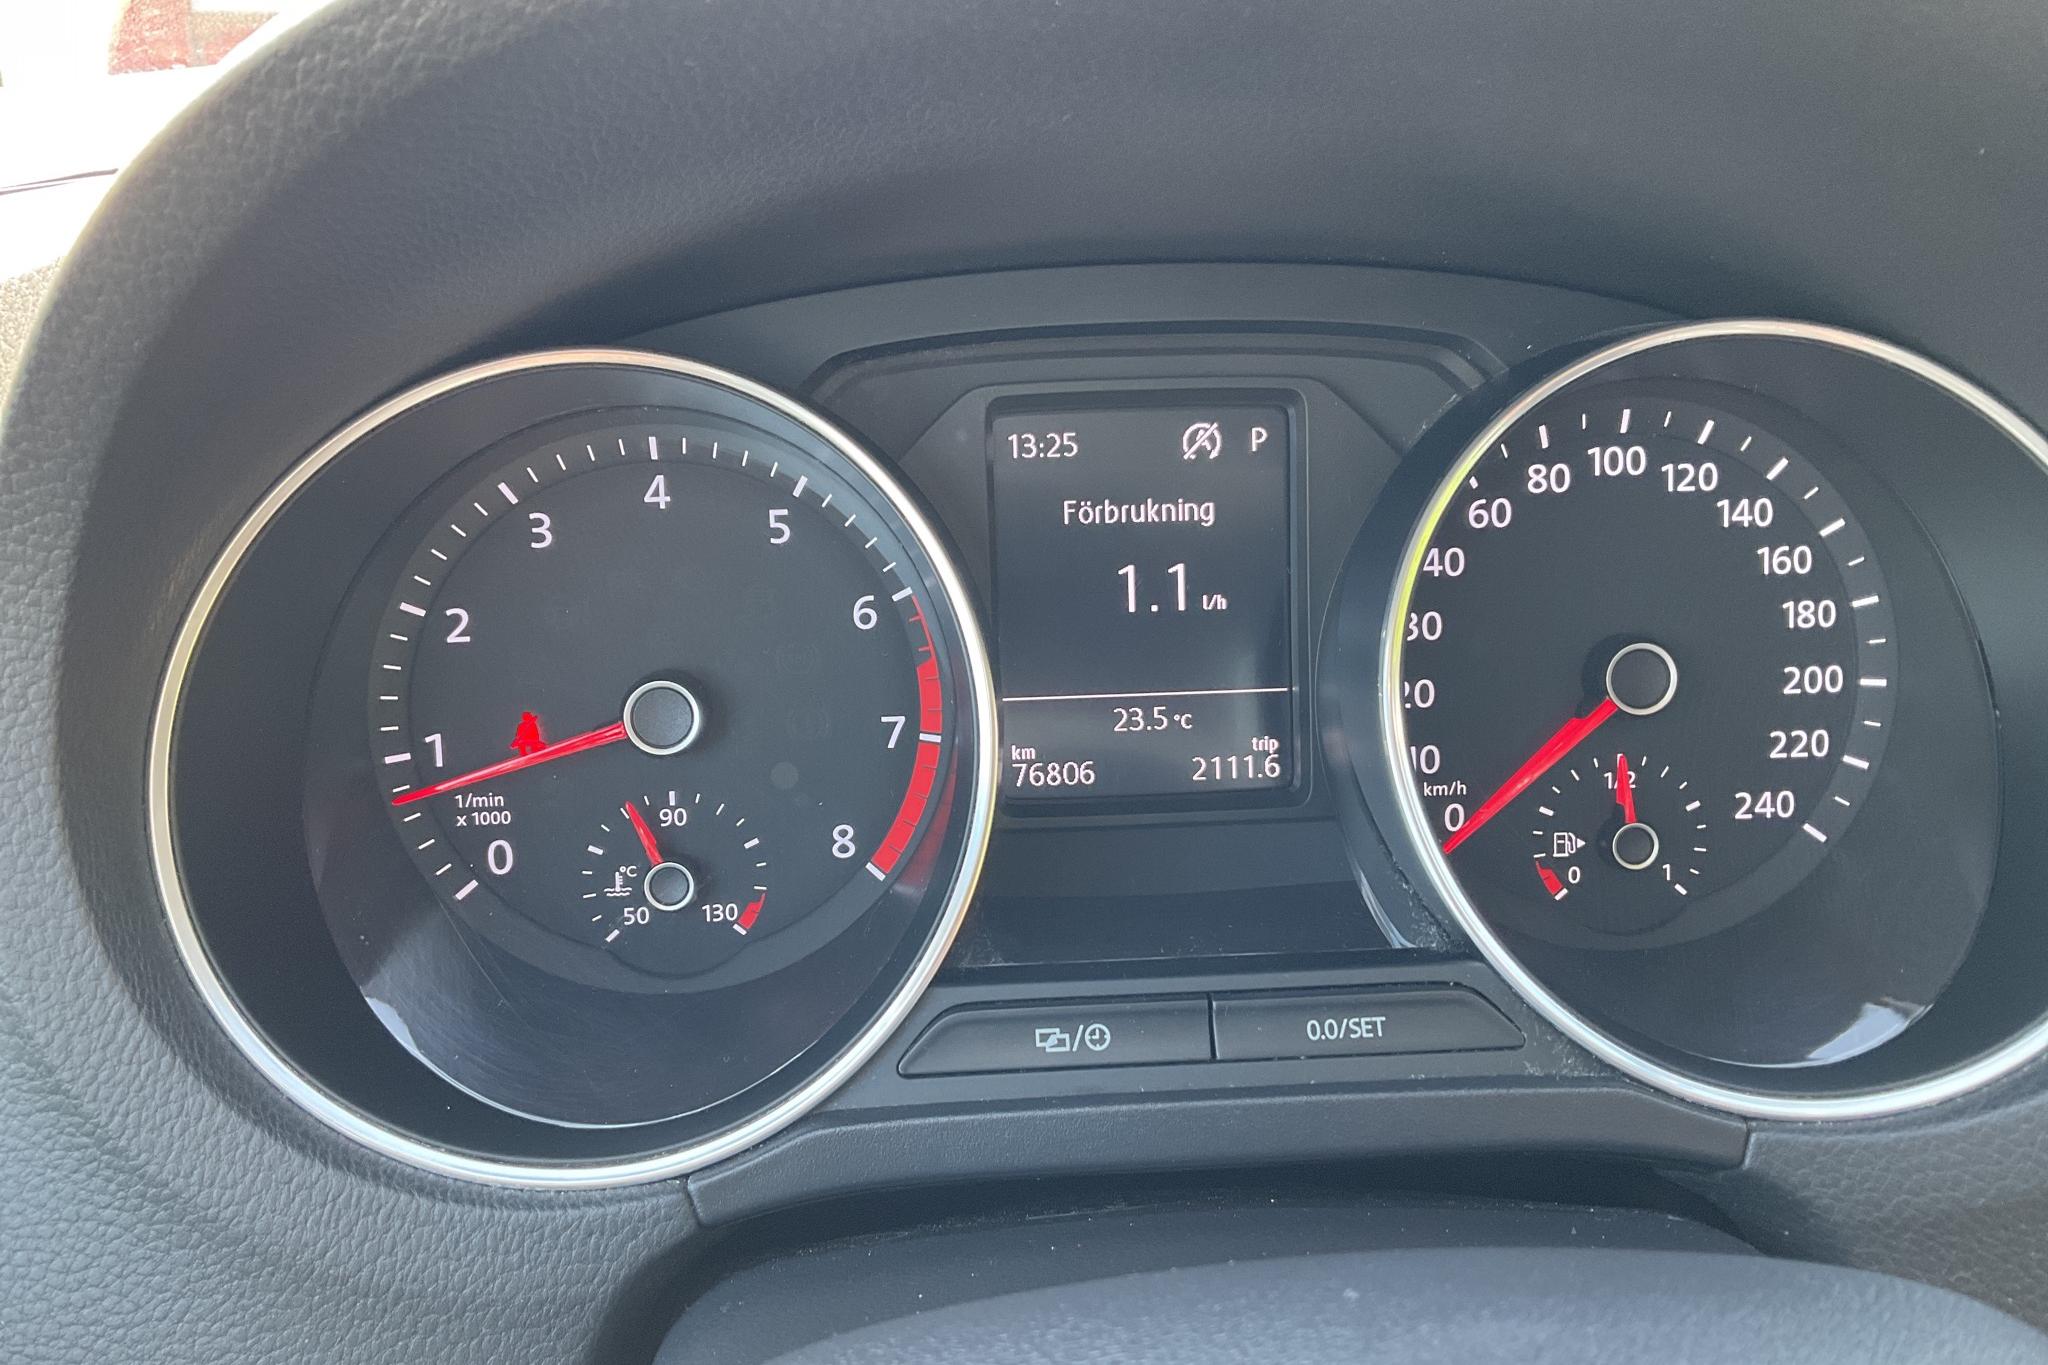 VW Polo 1.2 TSI 5dr (90hk) - 7 680 mil - Automat - silver - 2017